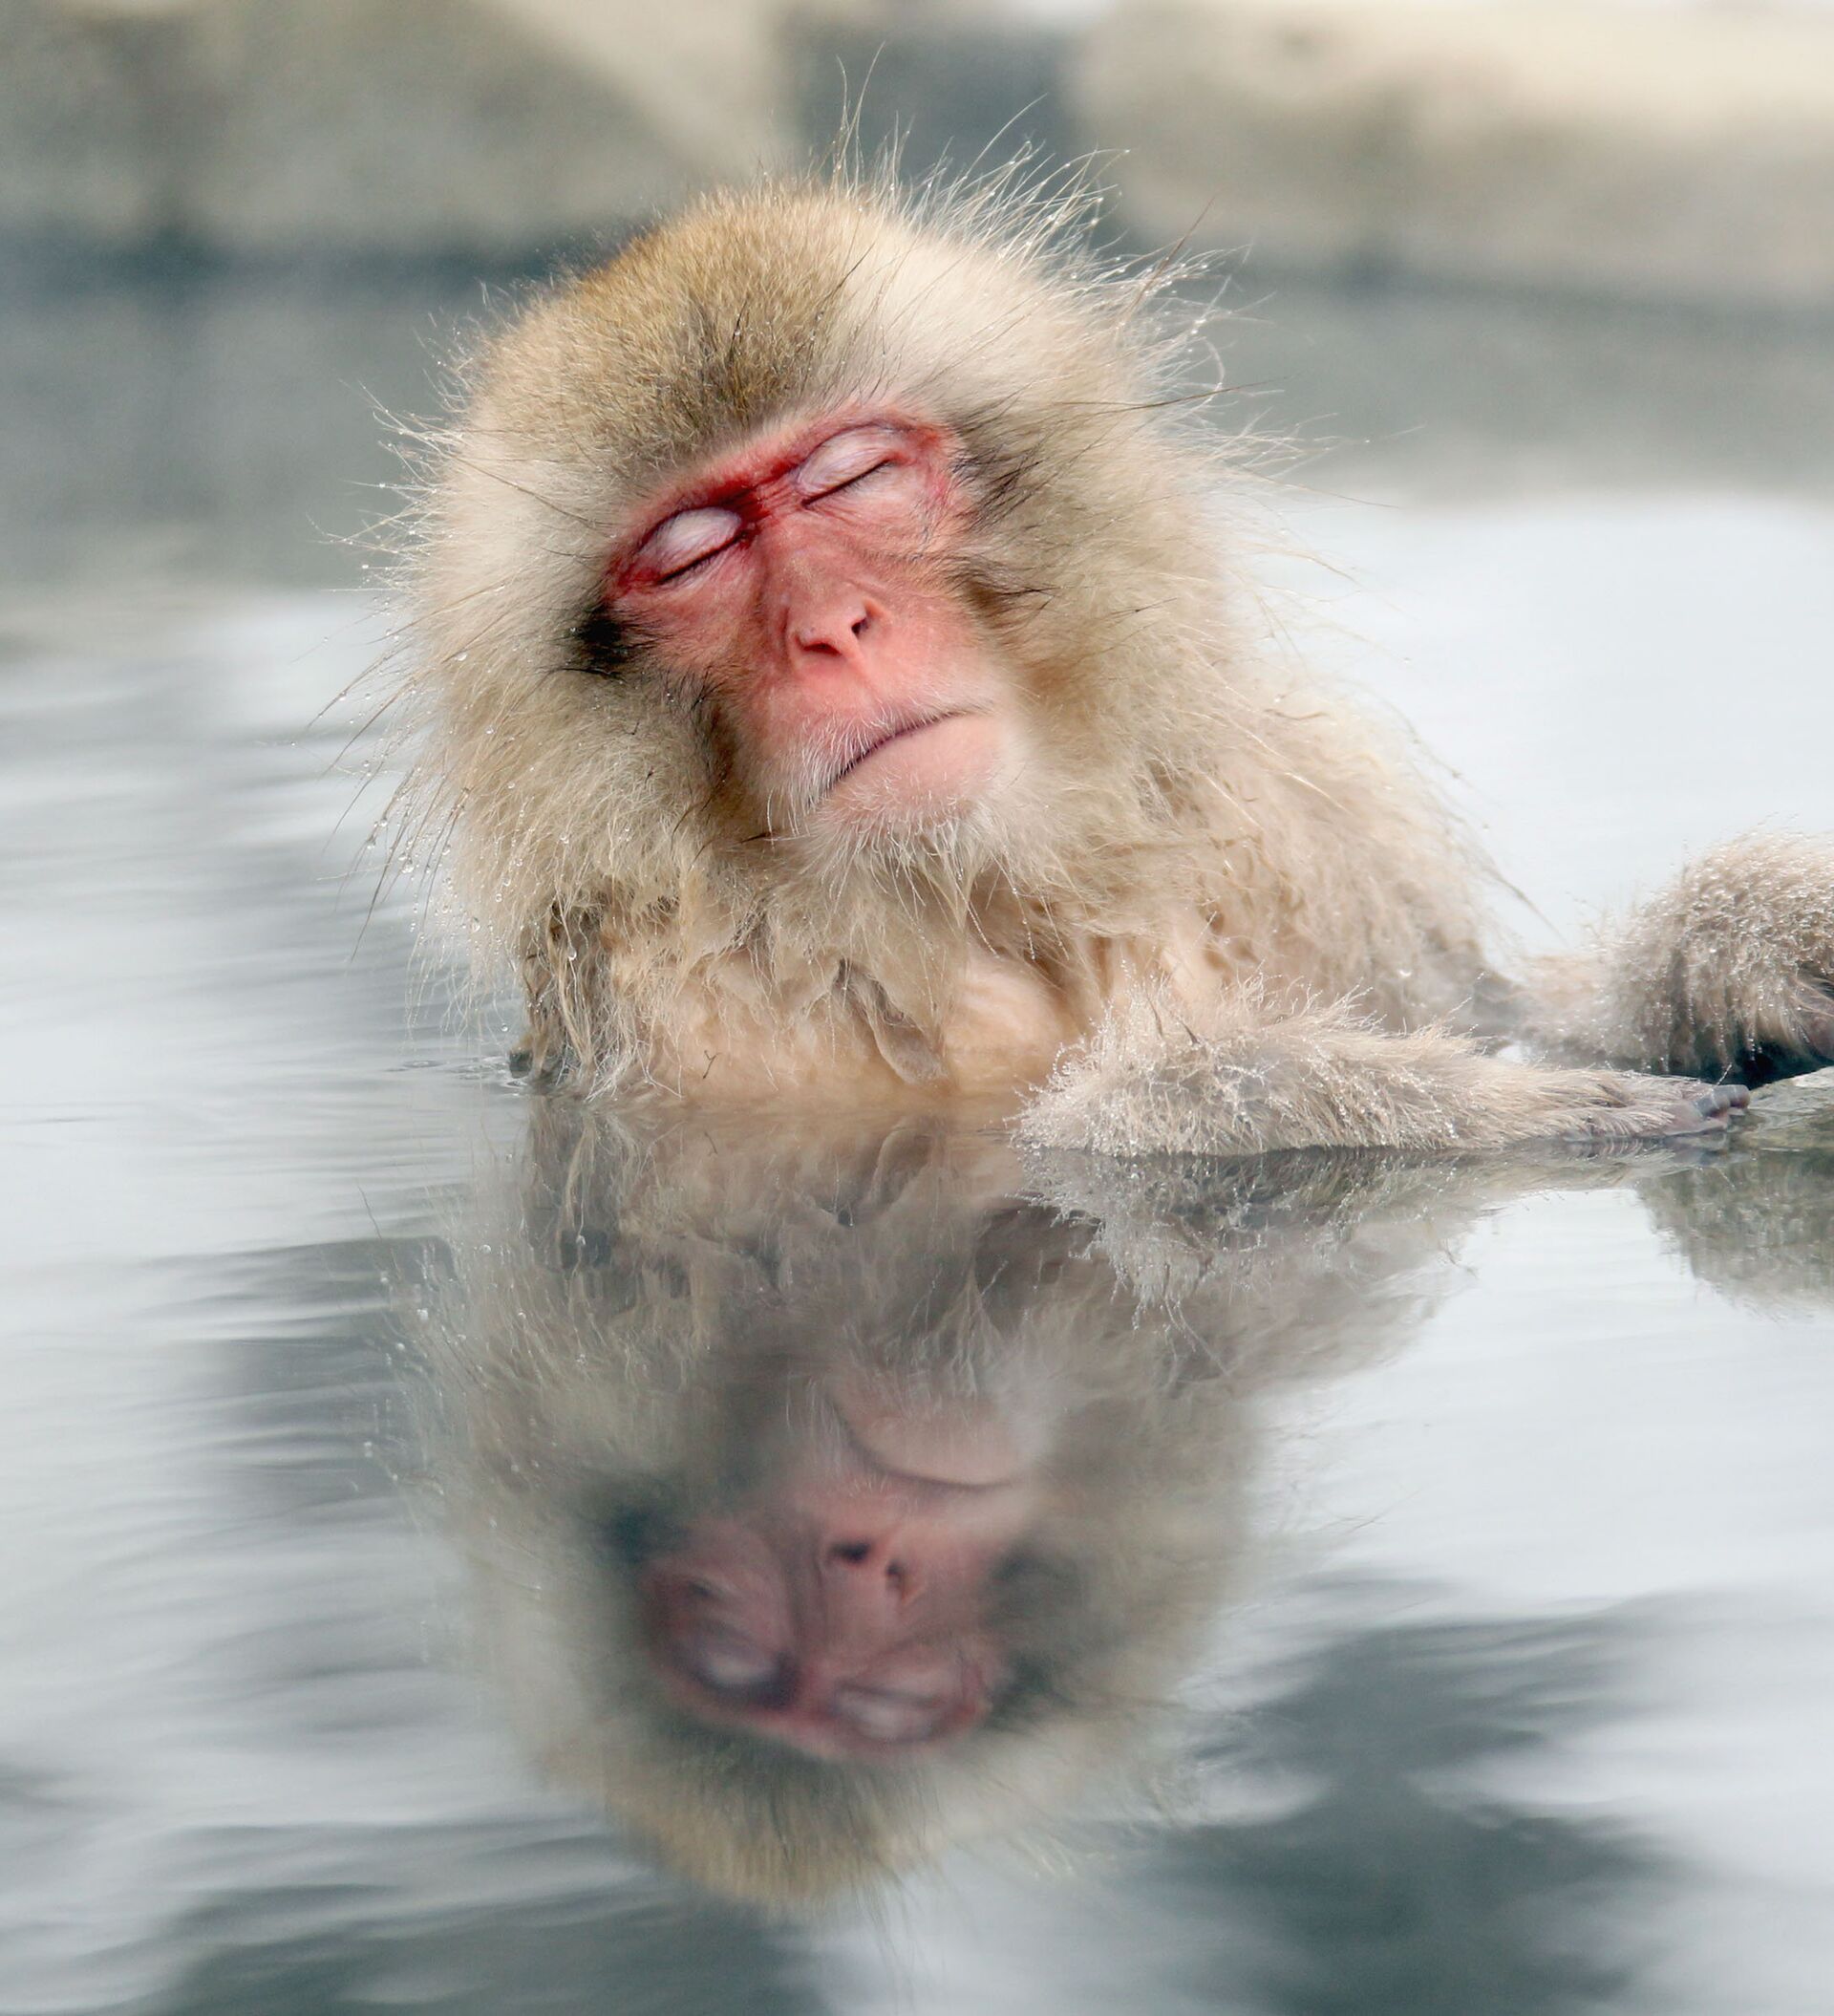 Японские макаки в горячих источниках. Японские обезьяны. Обезьяны в термальных источниках. Обезьянки в горячем источнике. Обезьяна в теплой воде хоккей